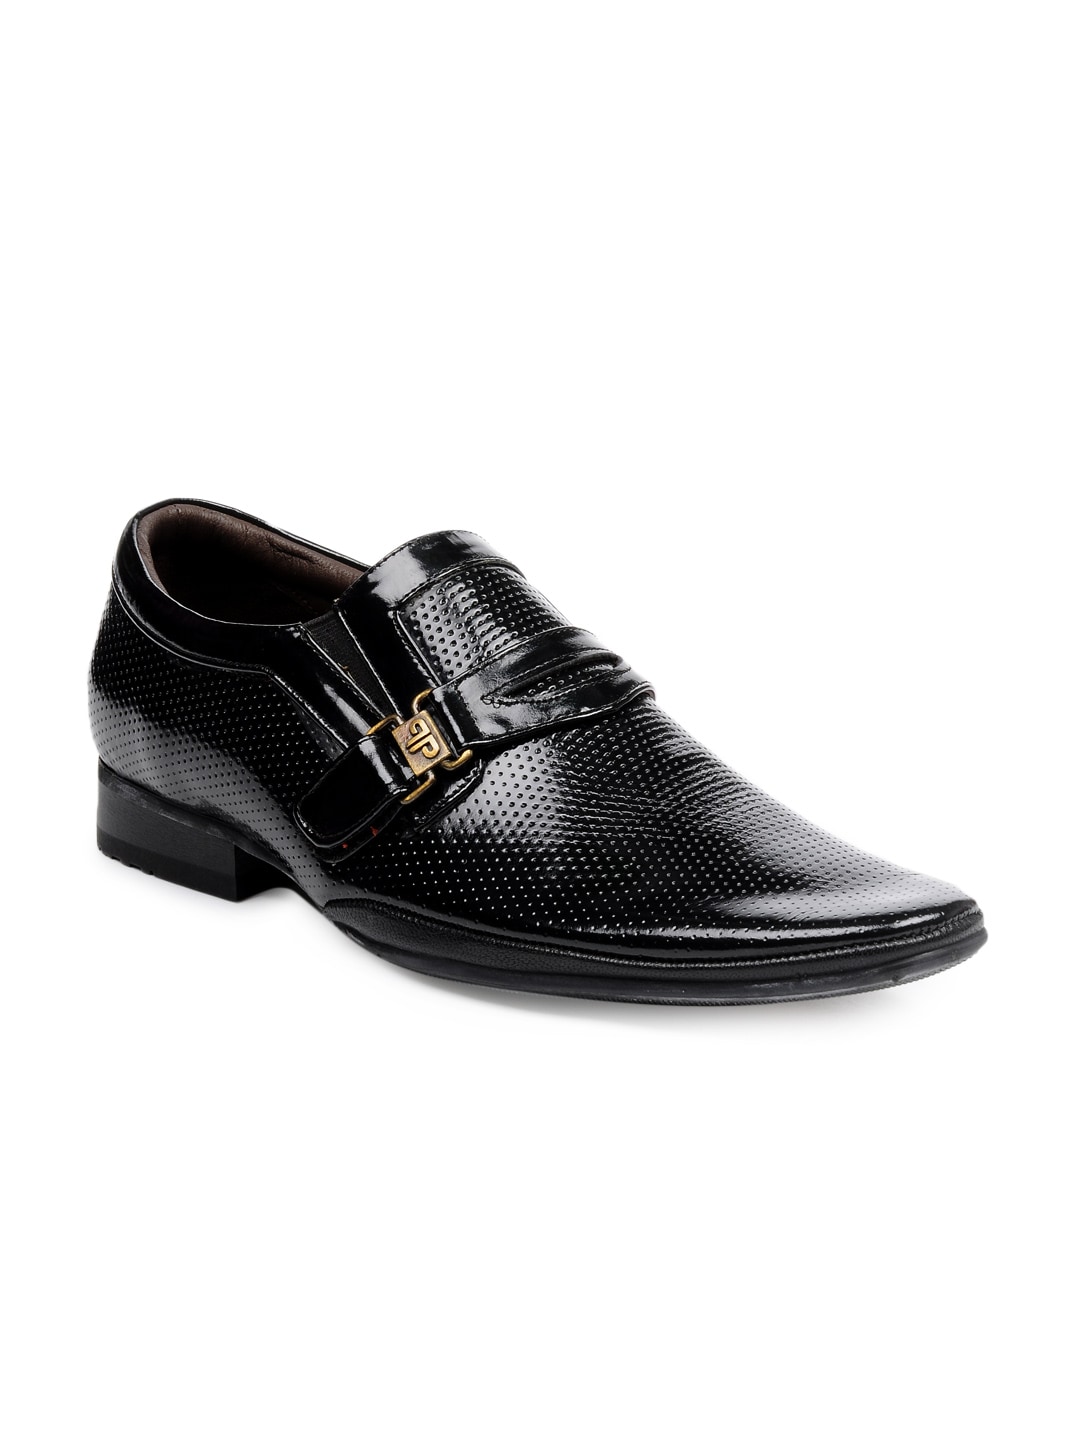 Provogue Men Black Casual Shoes